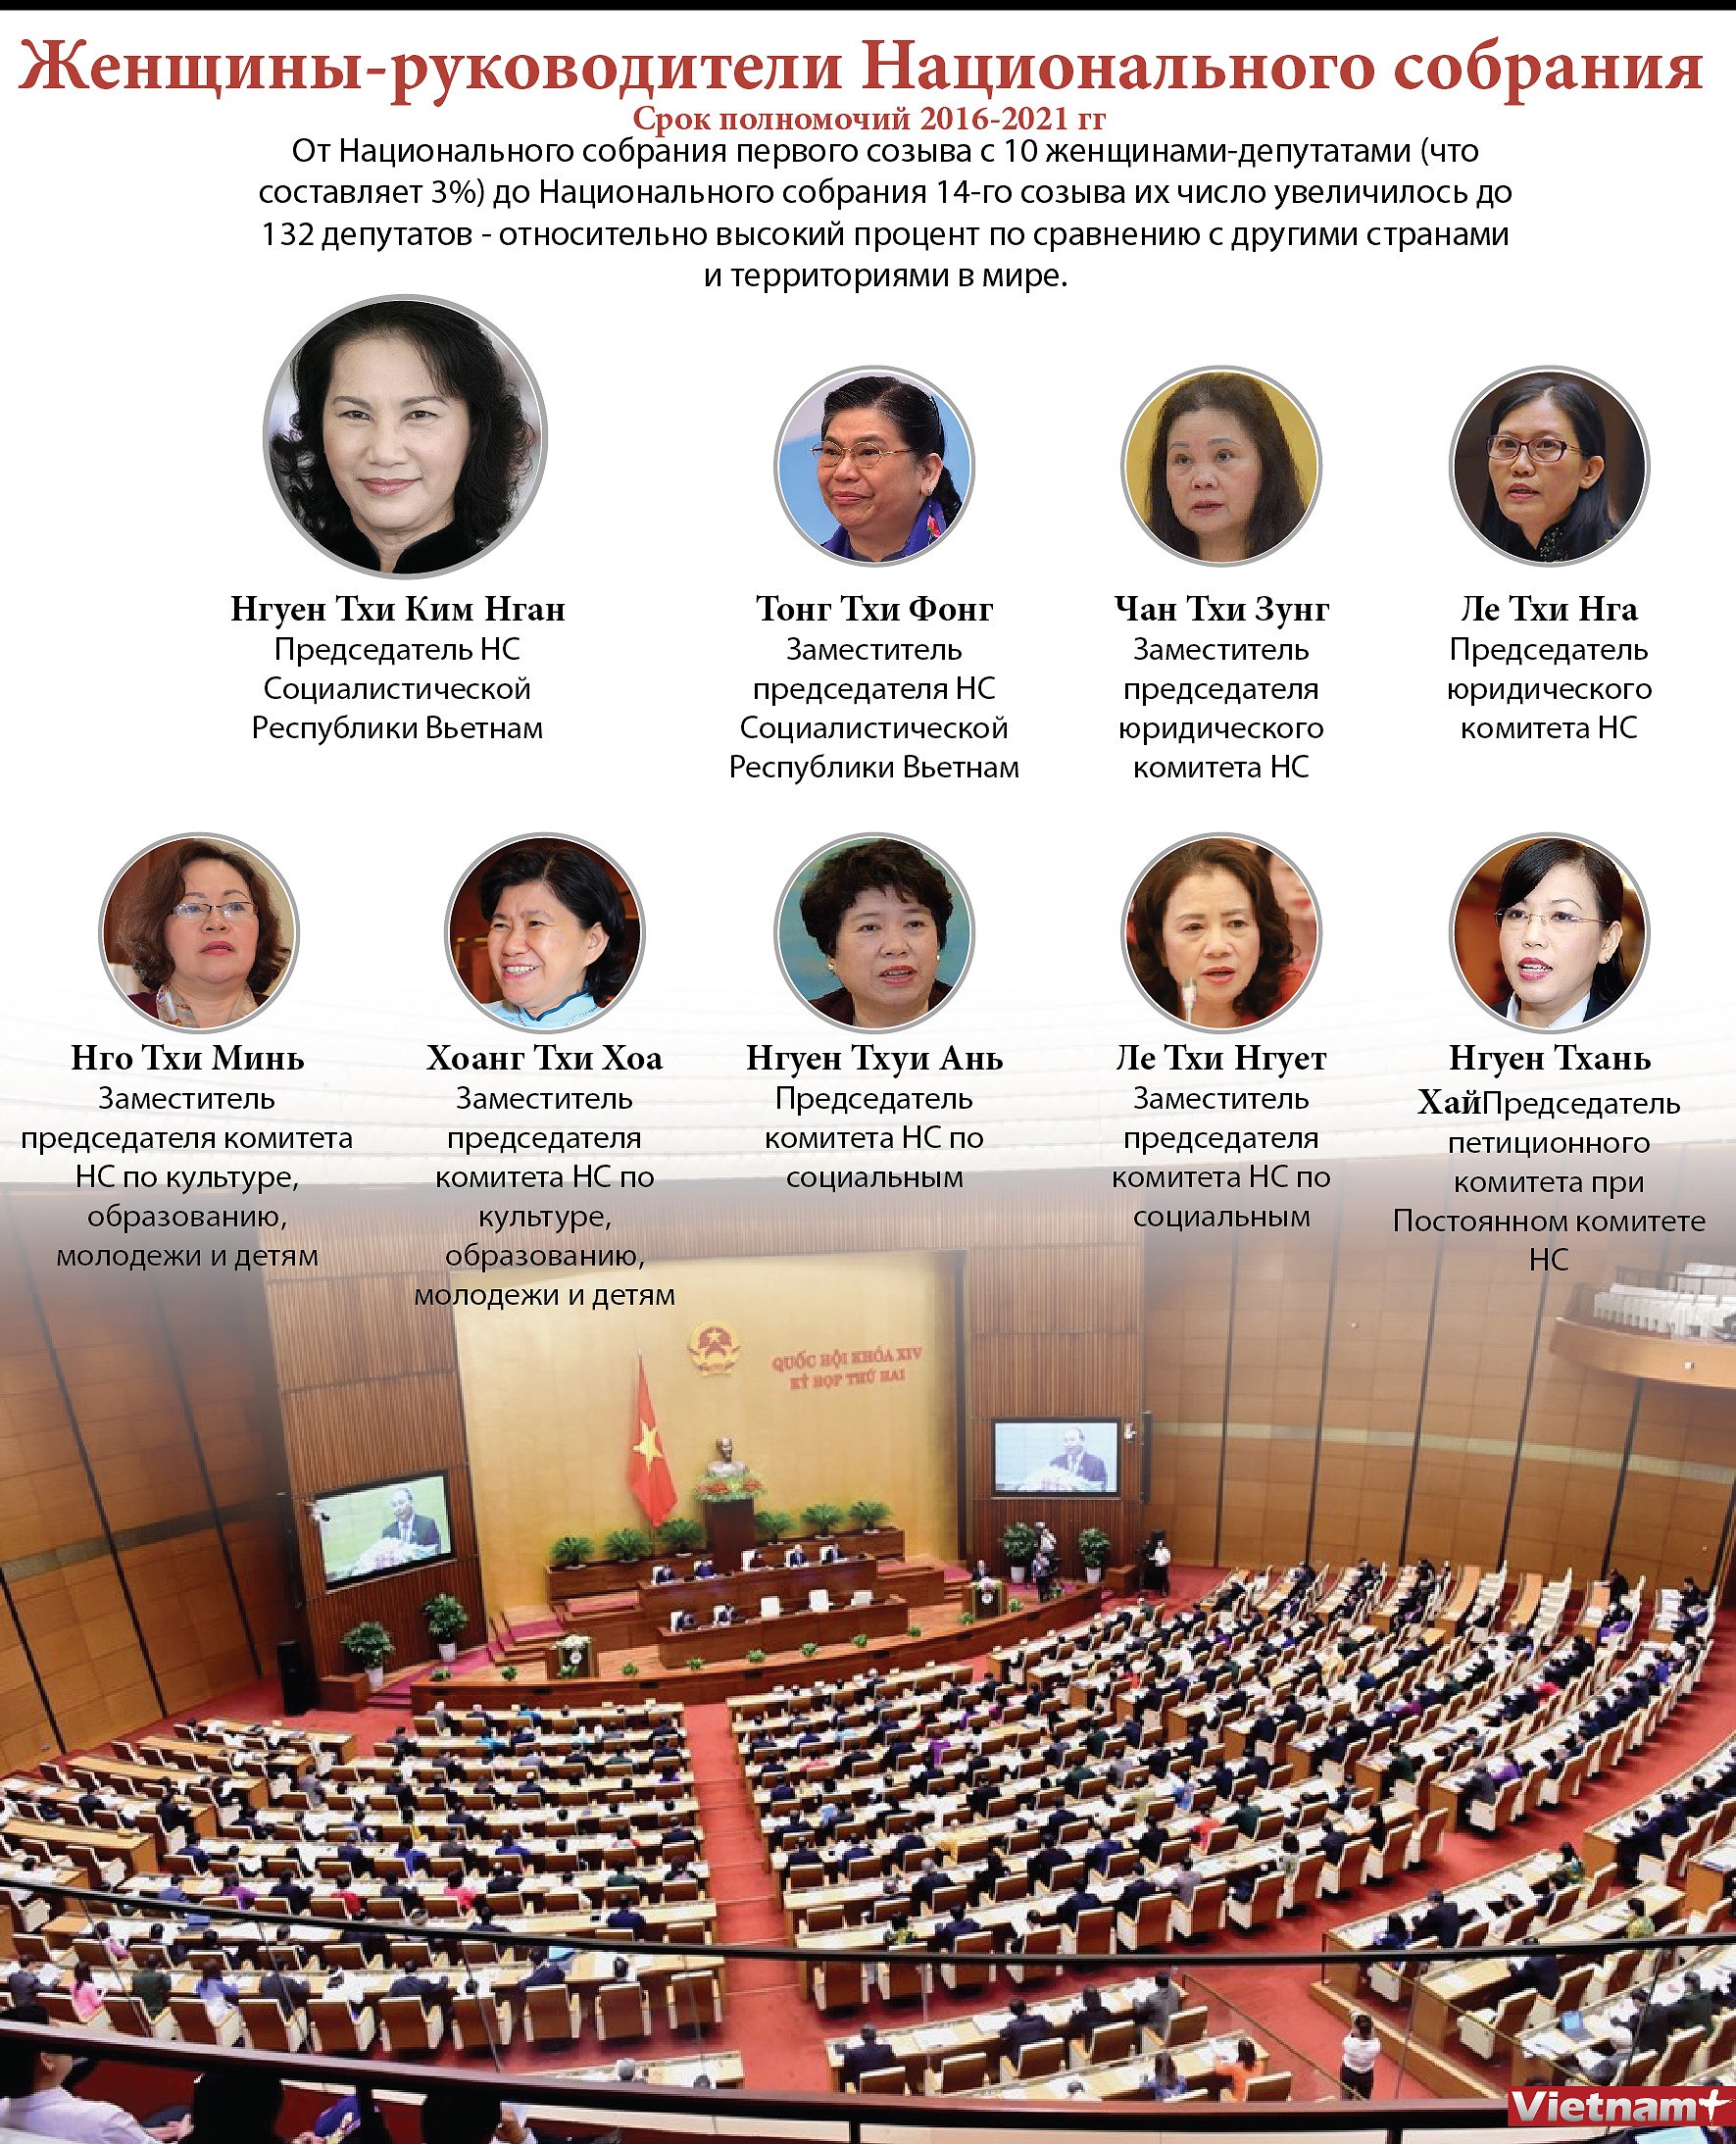 Женщины-руководители Национального собрания cрок полномочии 2016-2021 гг hinh anh 1